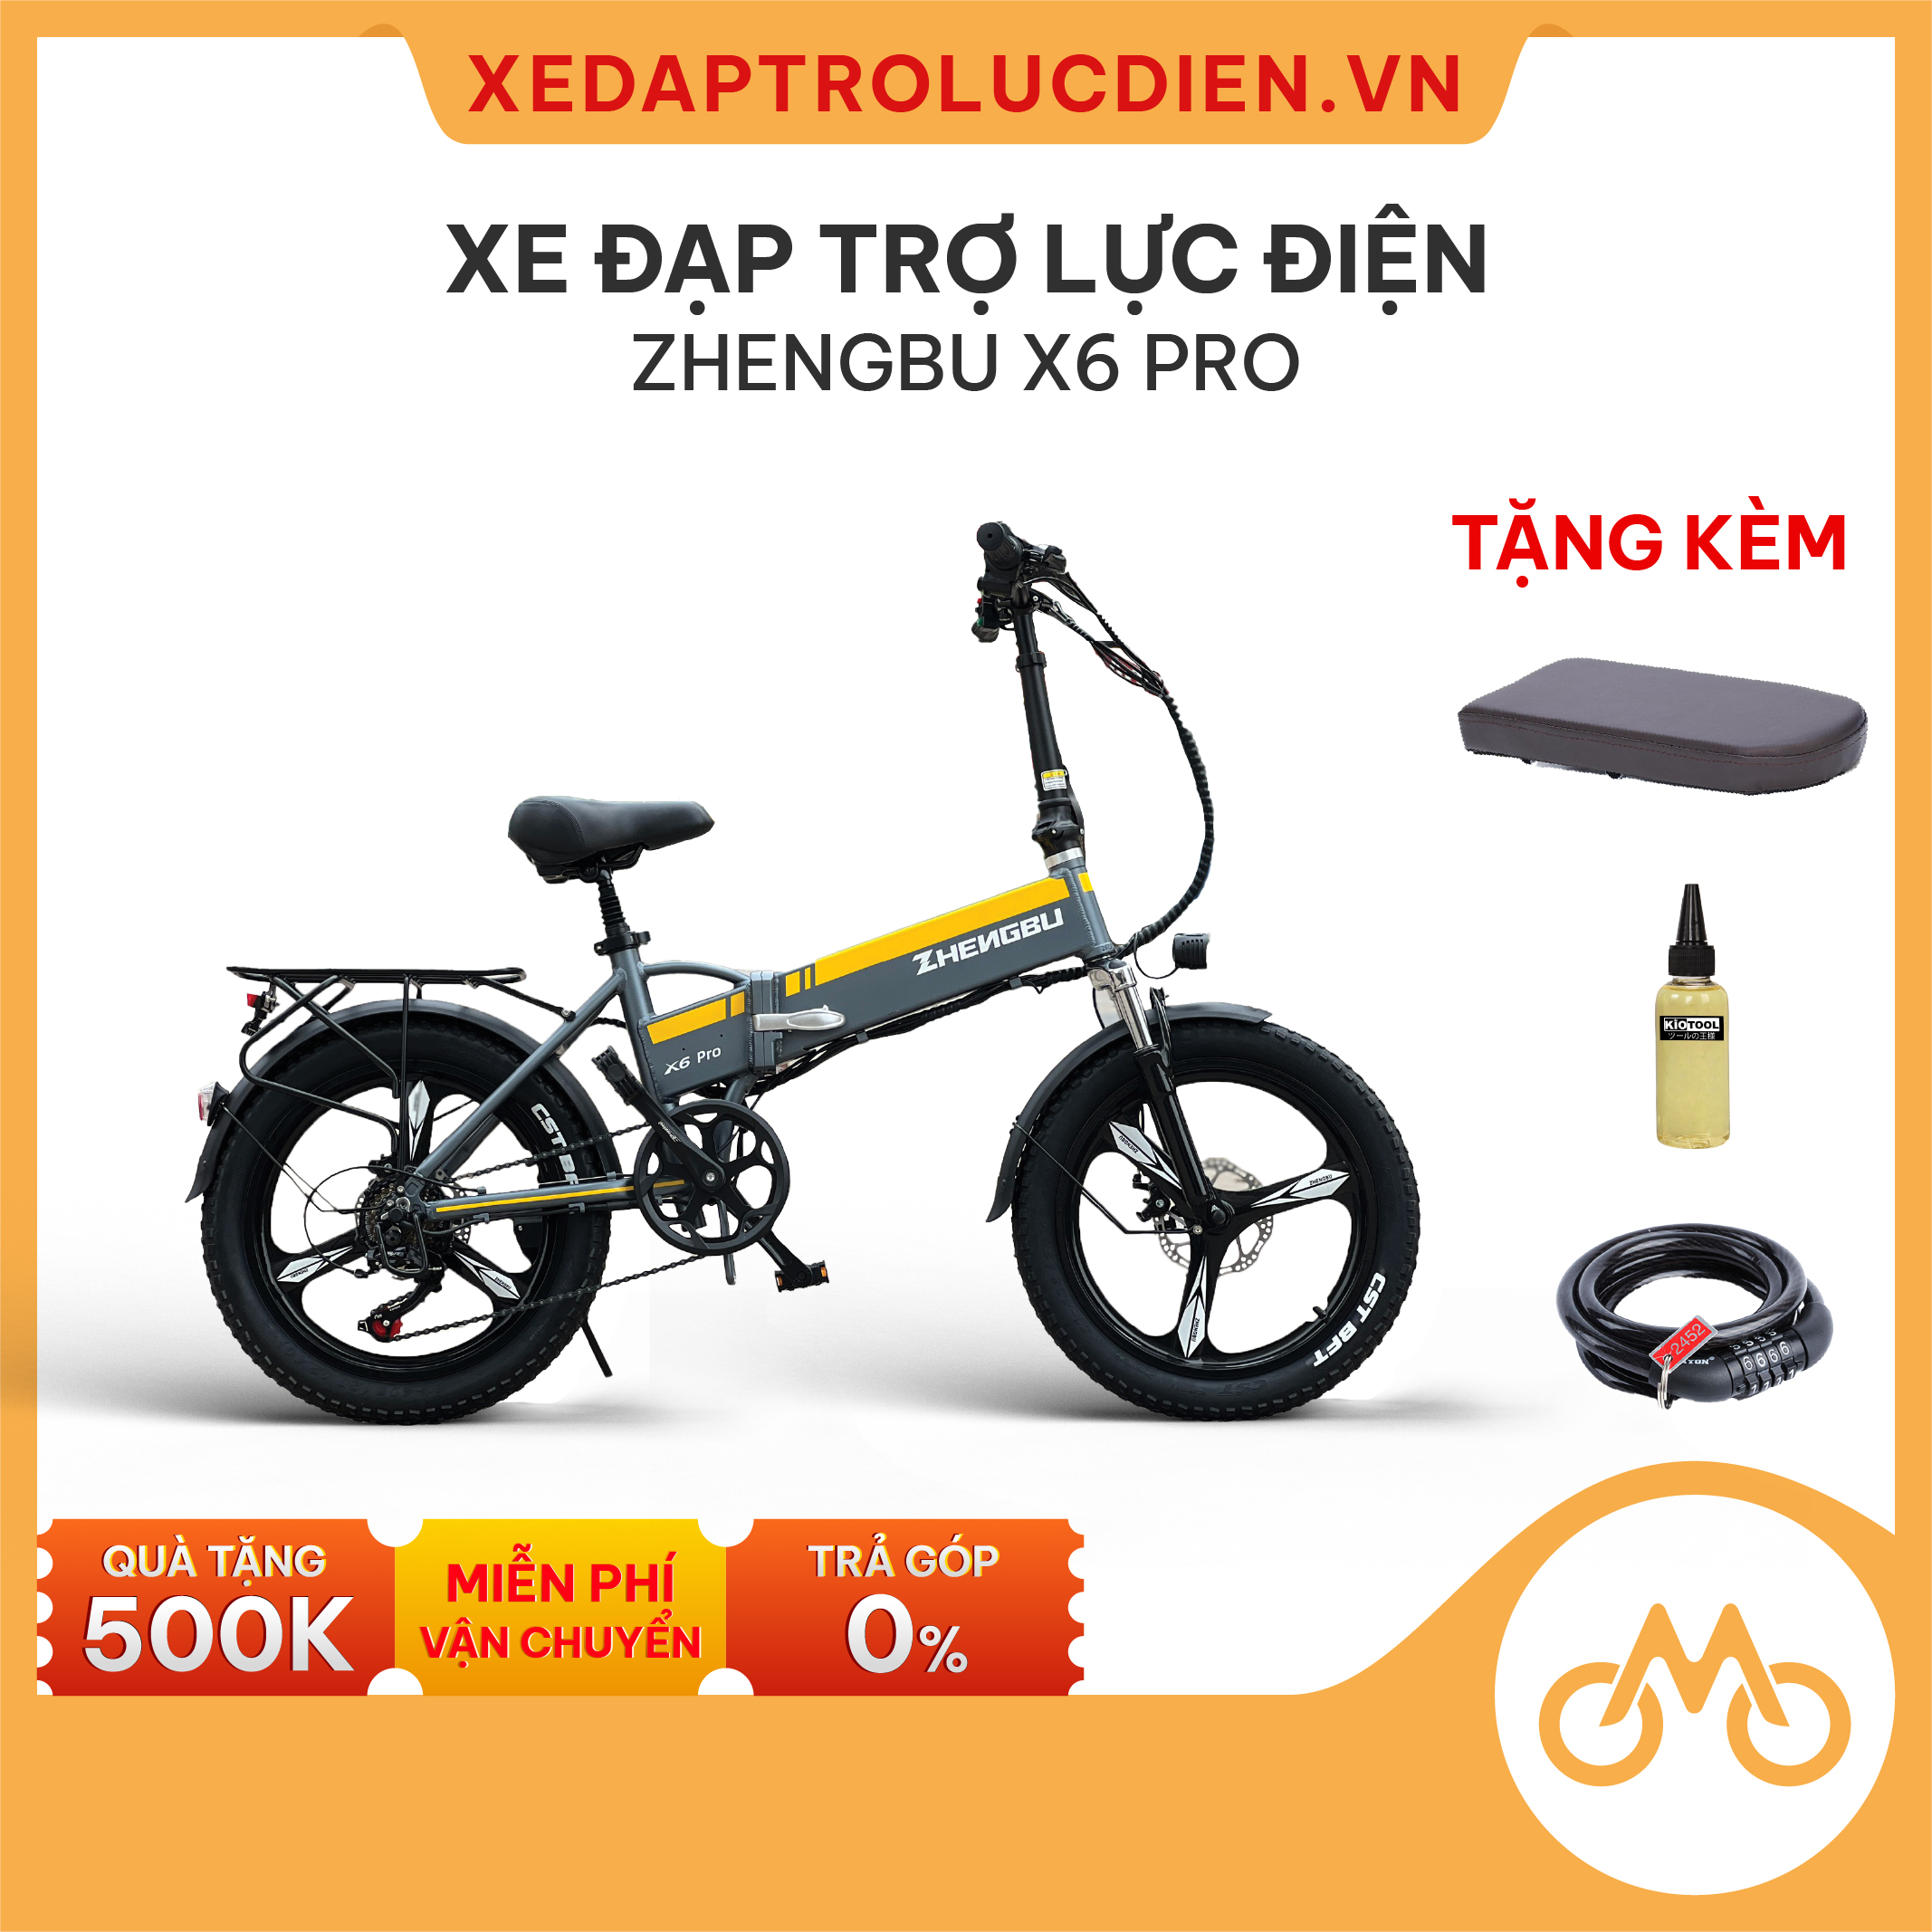 Xe đạp trợ lực điện Zhengbu X6 Pro Giá – Ưu đãi – Dịch vụ tốt nhất